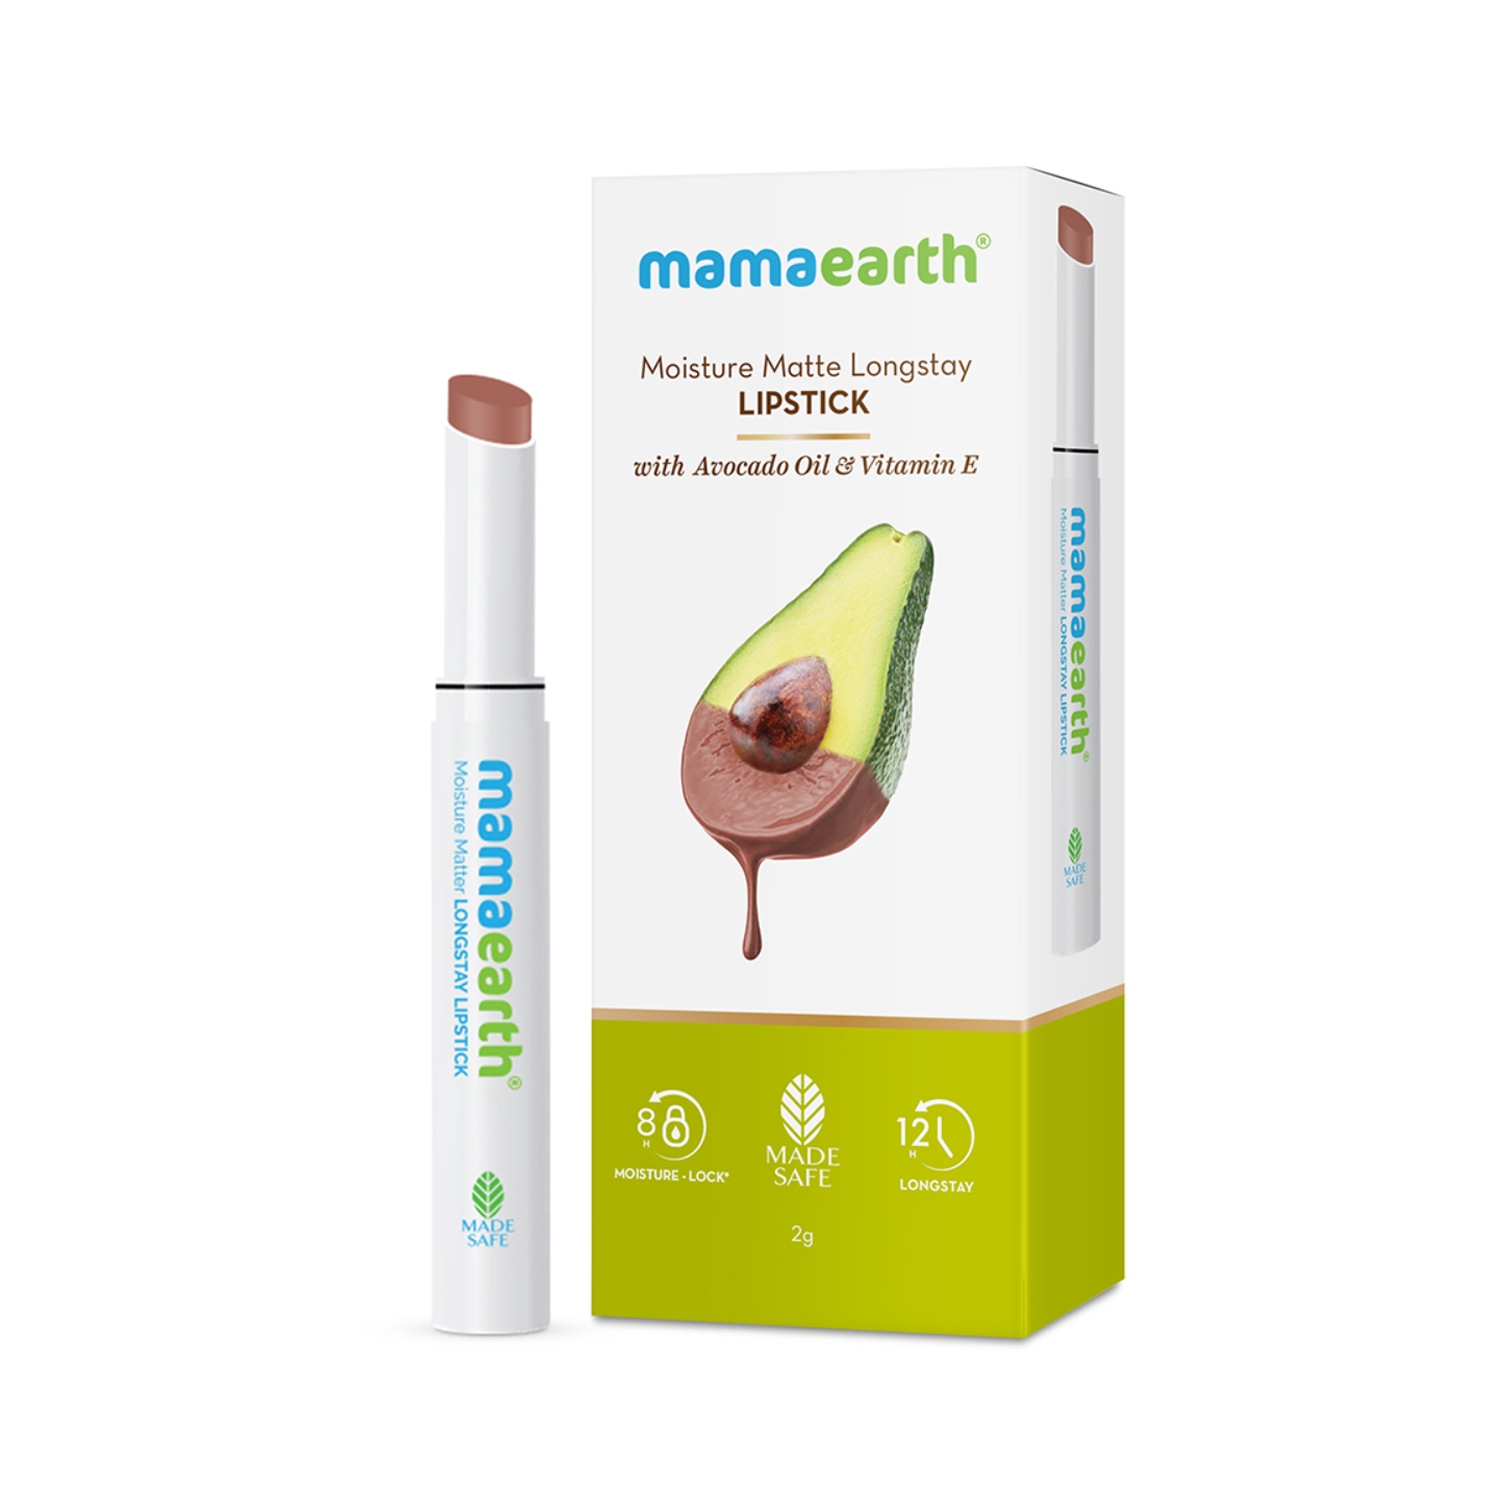 Mamaearth | Mamaearth Moisture Matte Longstay Lipstick With Avocado Oil & Vitamin E - 09 Espresso Brown (2g)